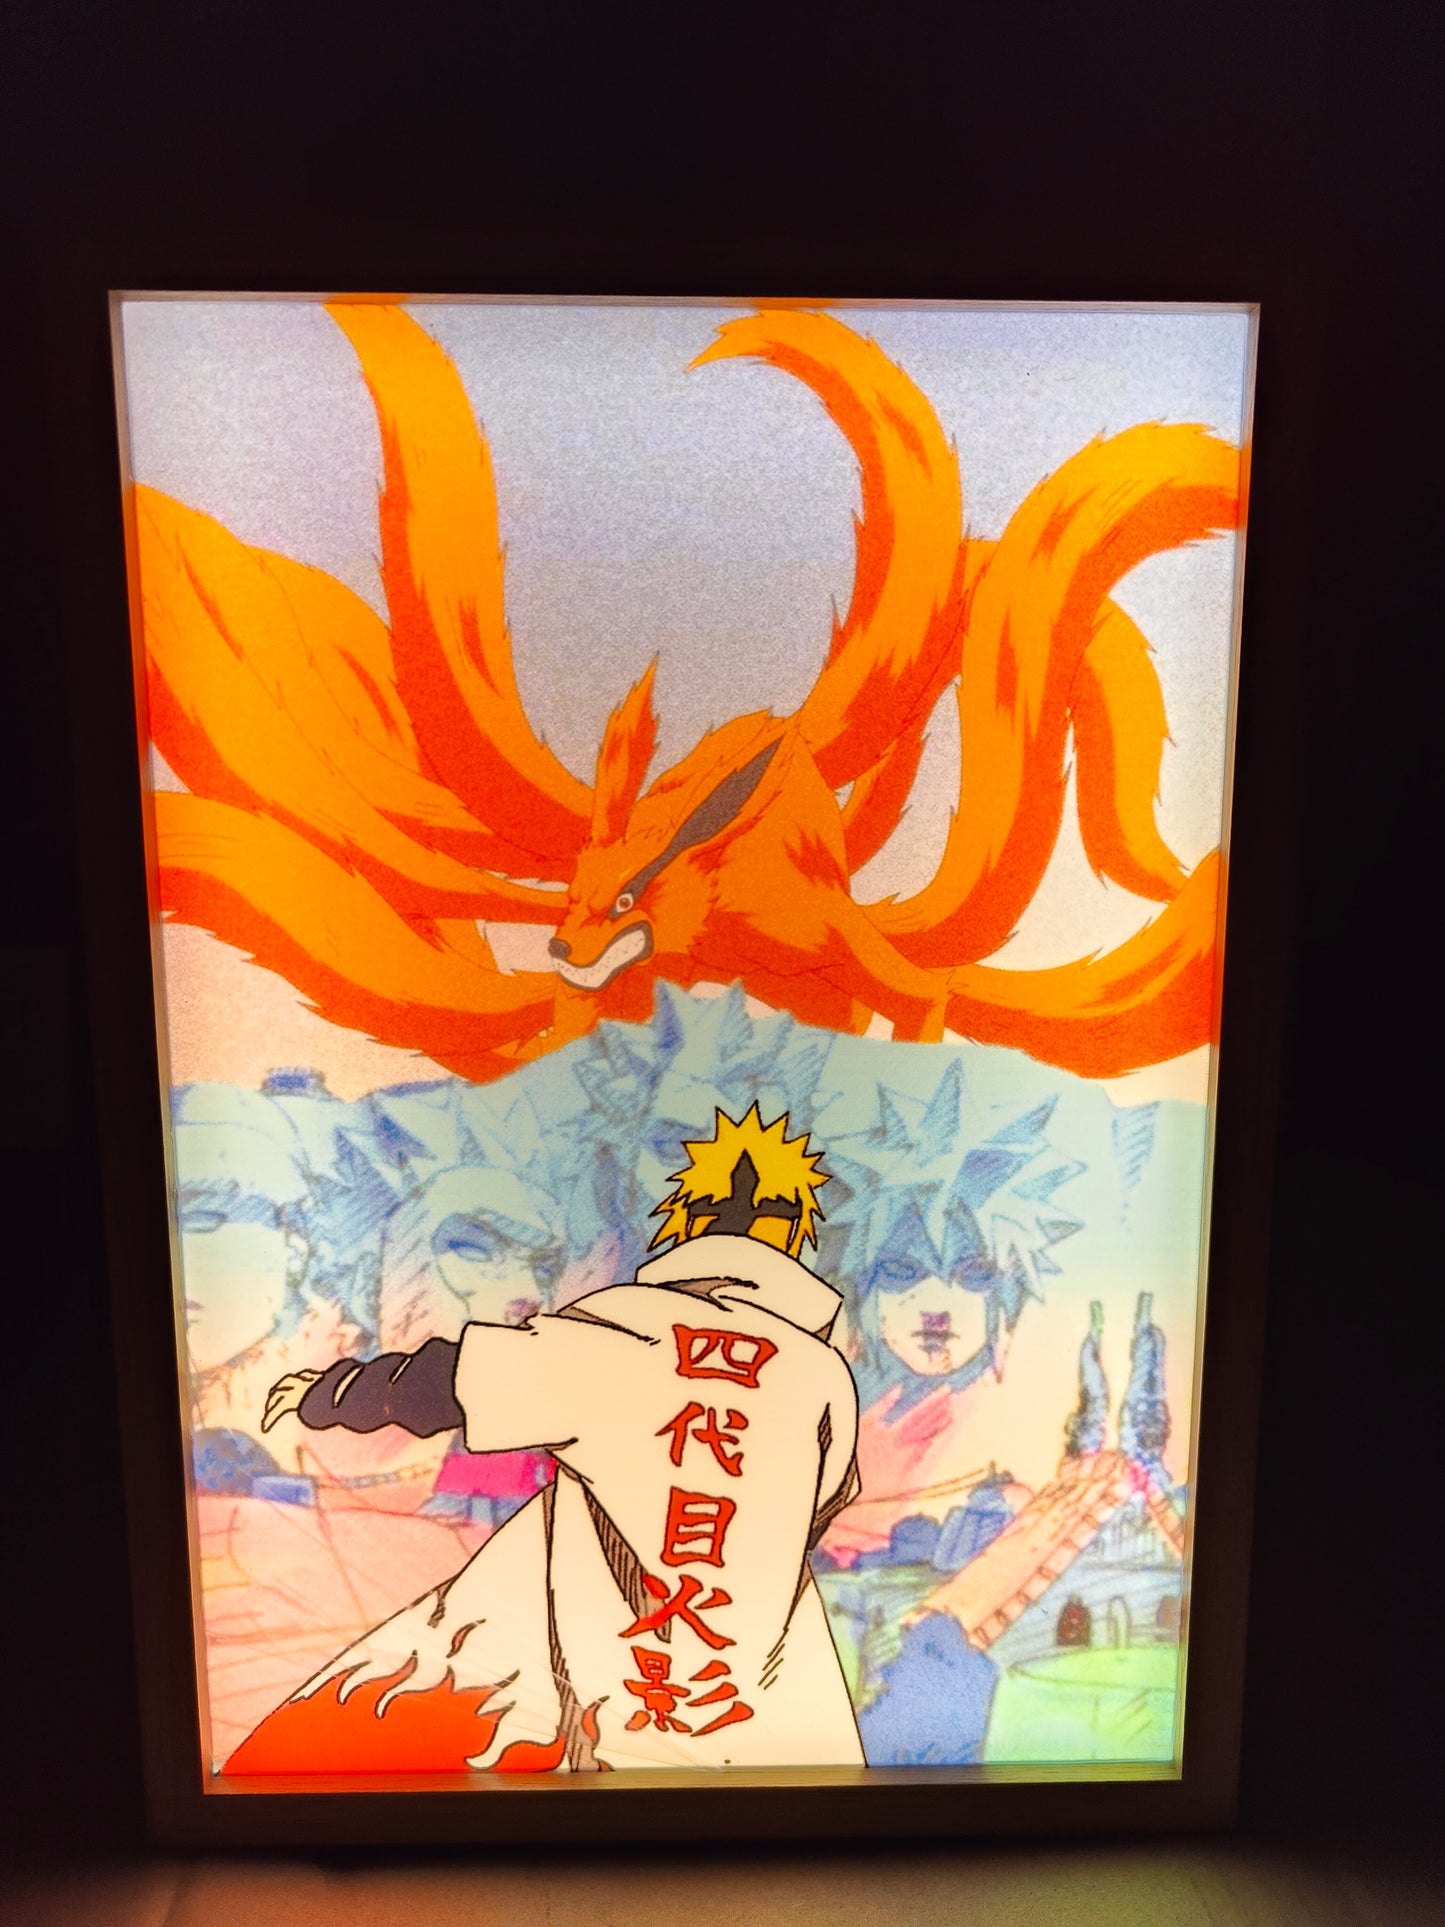 Naruto Shippuden - Minato Light Up Frame Art Portrait